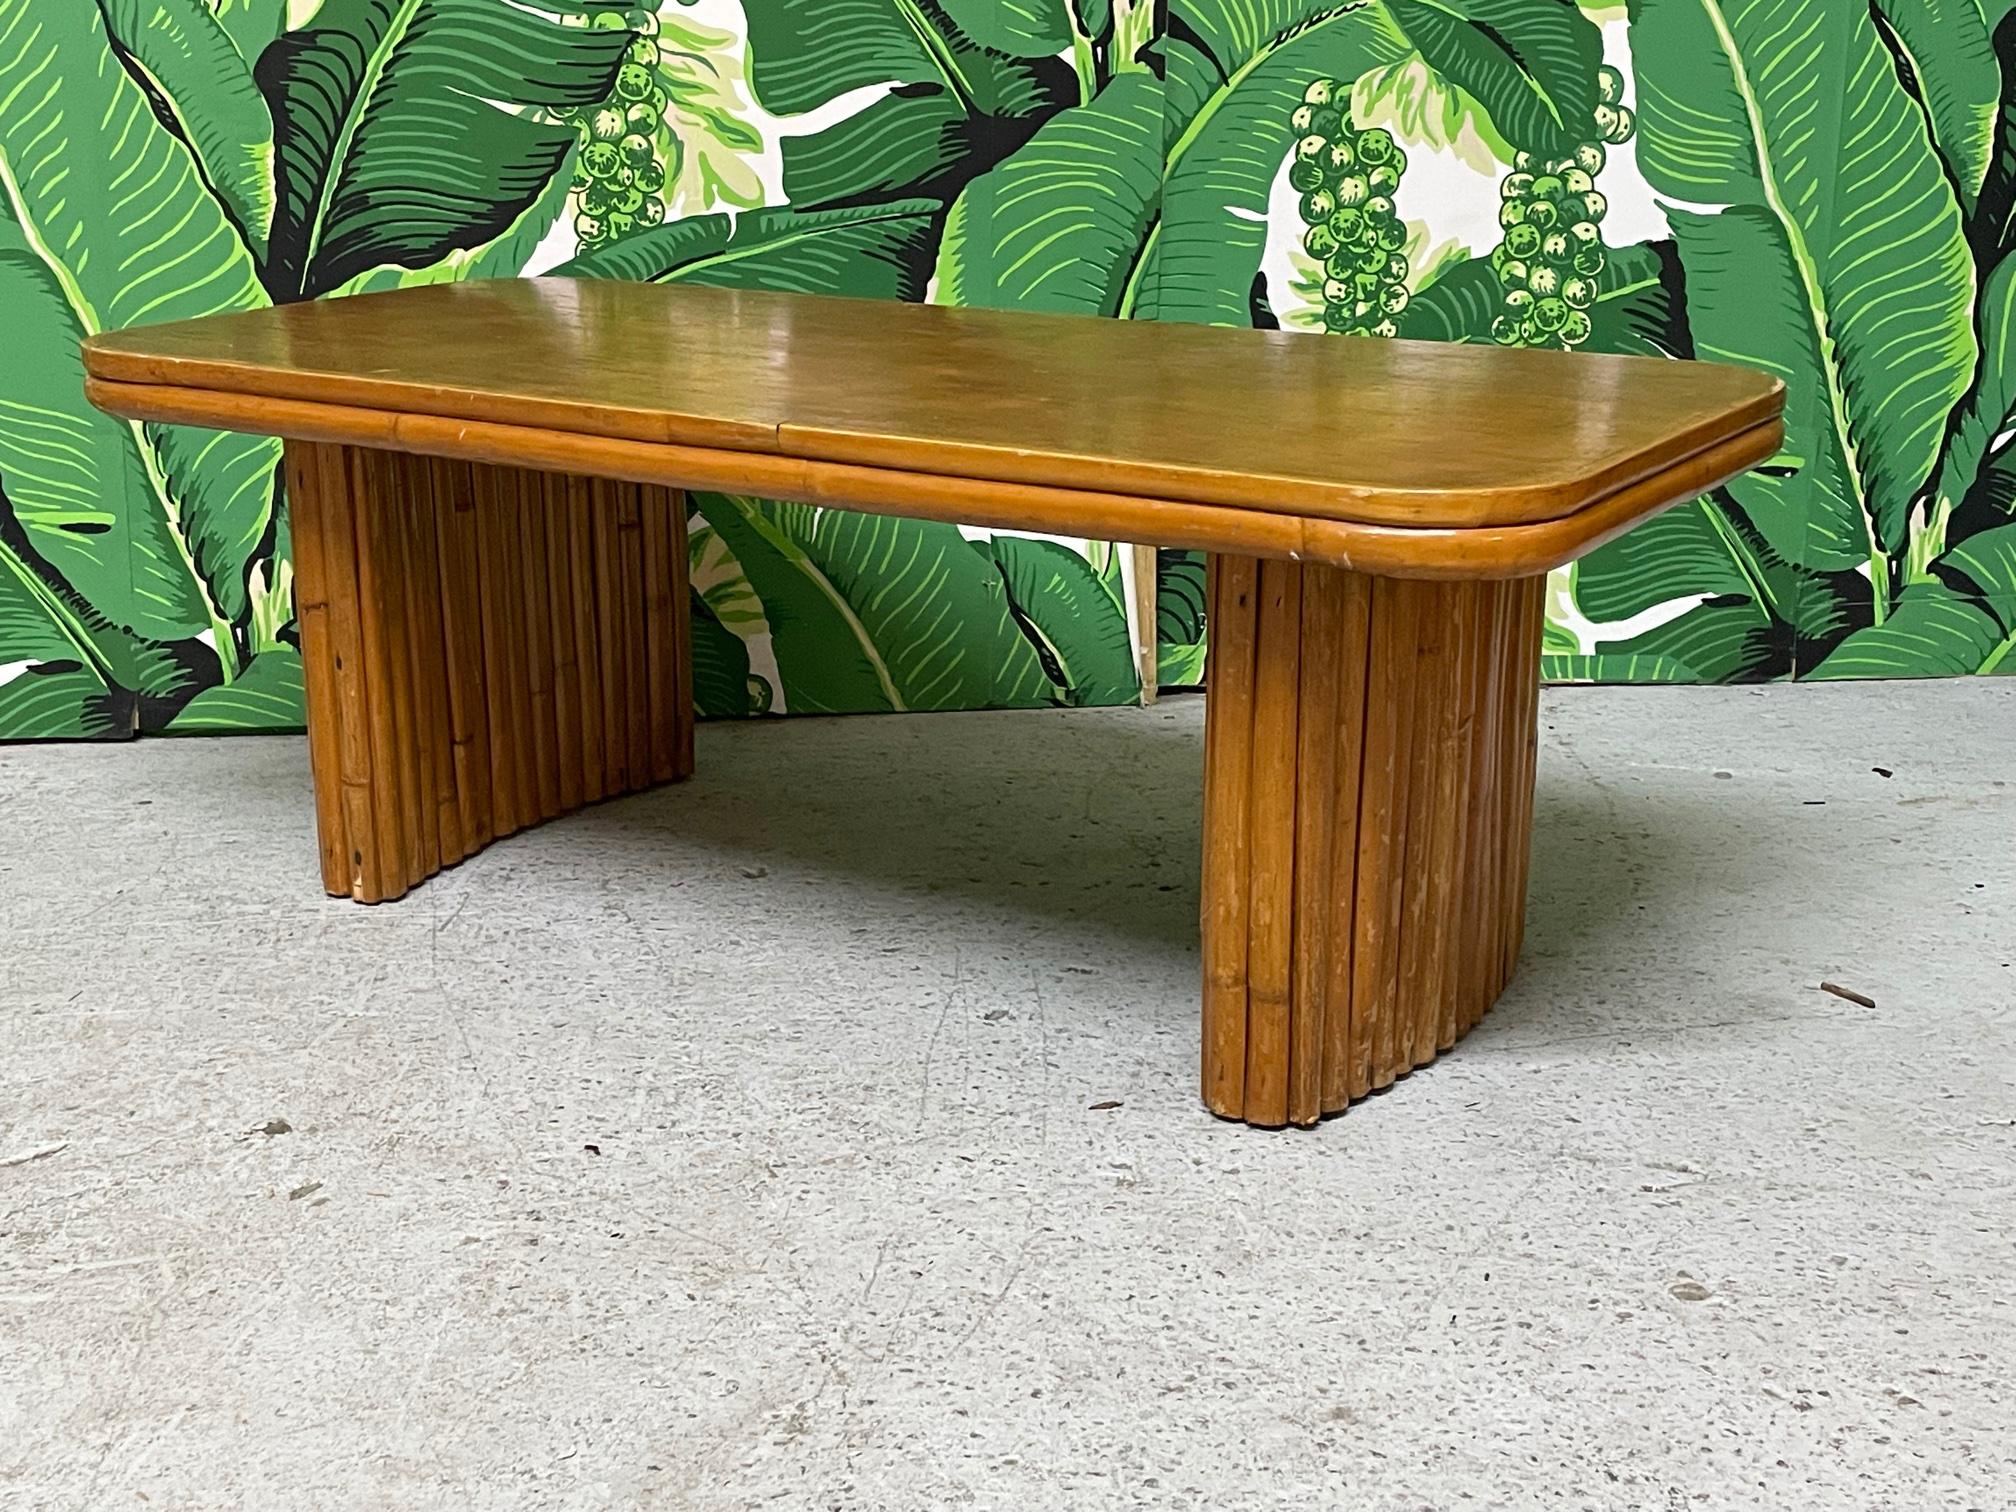 Cette petite table à café ou à cocktail présente un design en rotin empilé dans le style de Paul Frankl. Plateau en bois massif. Bon état vintage avec des imperfections dues à l'âge, voir les photos pour les détails de l'état.
Pour un devis